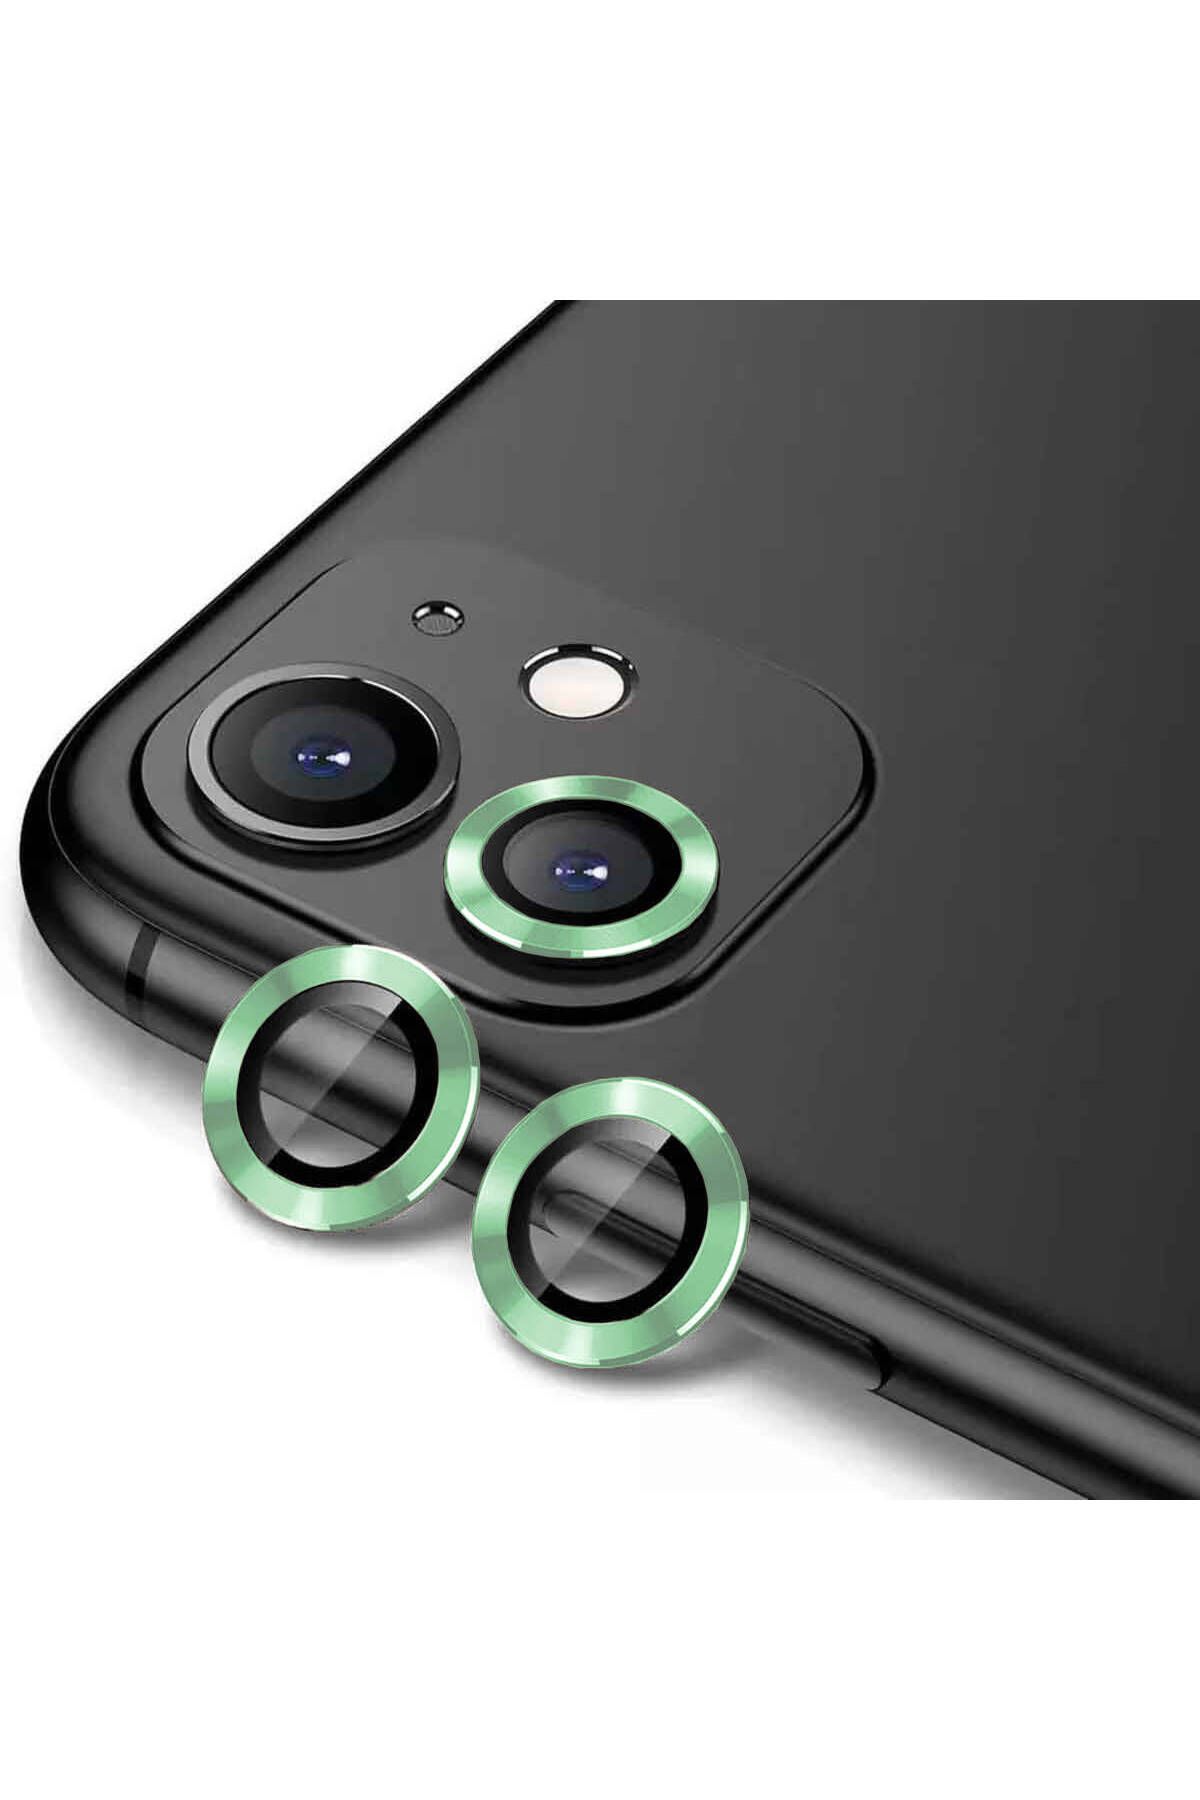 CEPCASE Apple iPhone 12 Mini Kamera Lens Koruyucu Exclusive Premium Sapphire Tak Yapıştır Lens Koruma